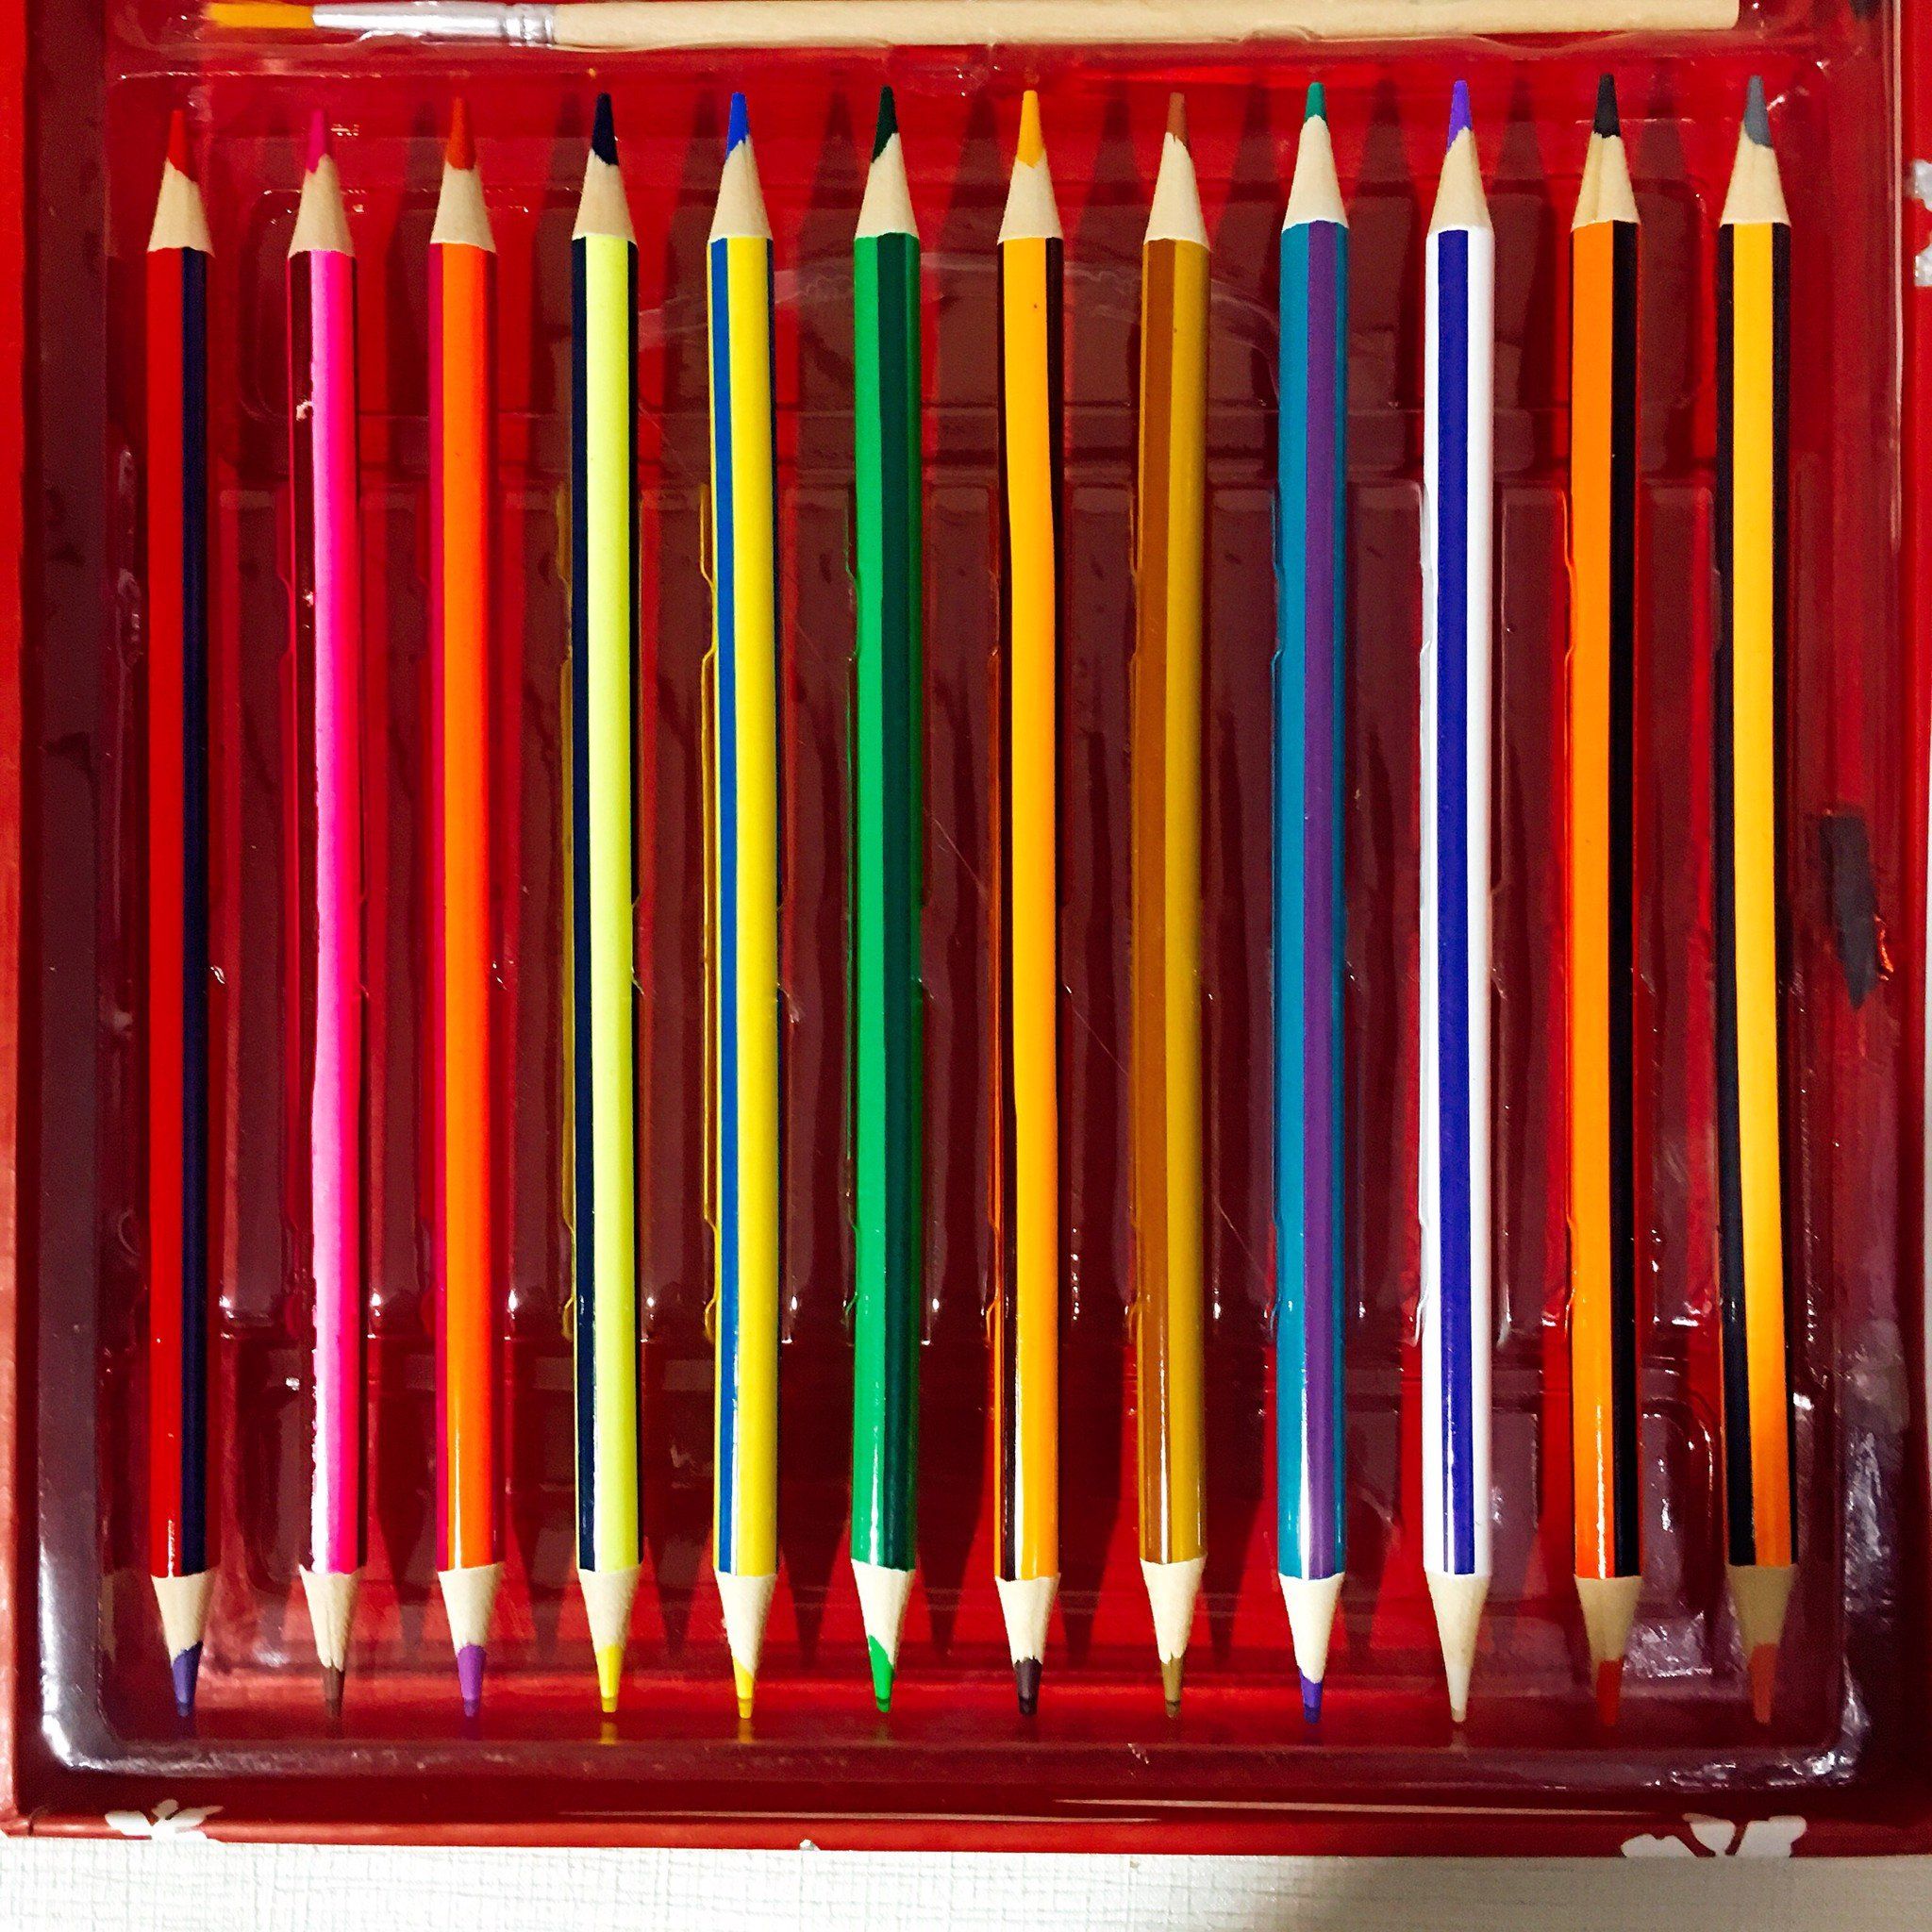  Bộ bút sáp - Bút chì màu - Bút màu nước Beddybear / Beddy Bear dành cho bé trai, bé gái từ 3 tuổi, mầm non, tiểu học/ họa tiết Tuần lộc Q1805-TUANLOC 